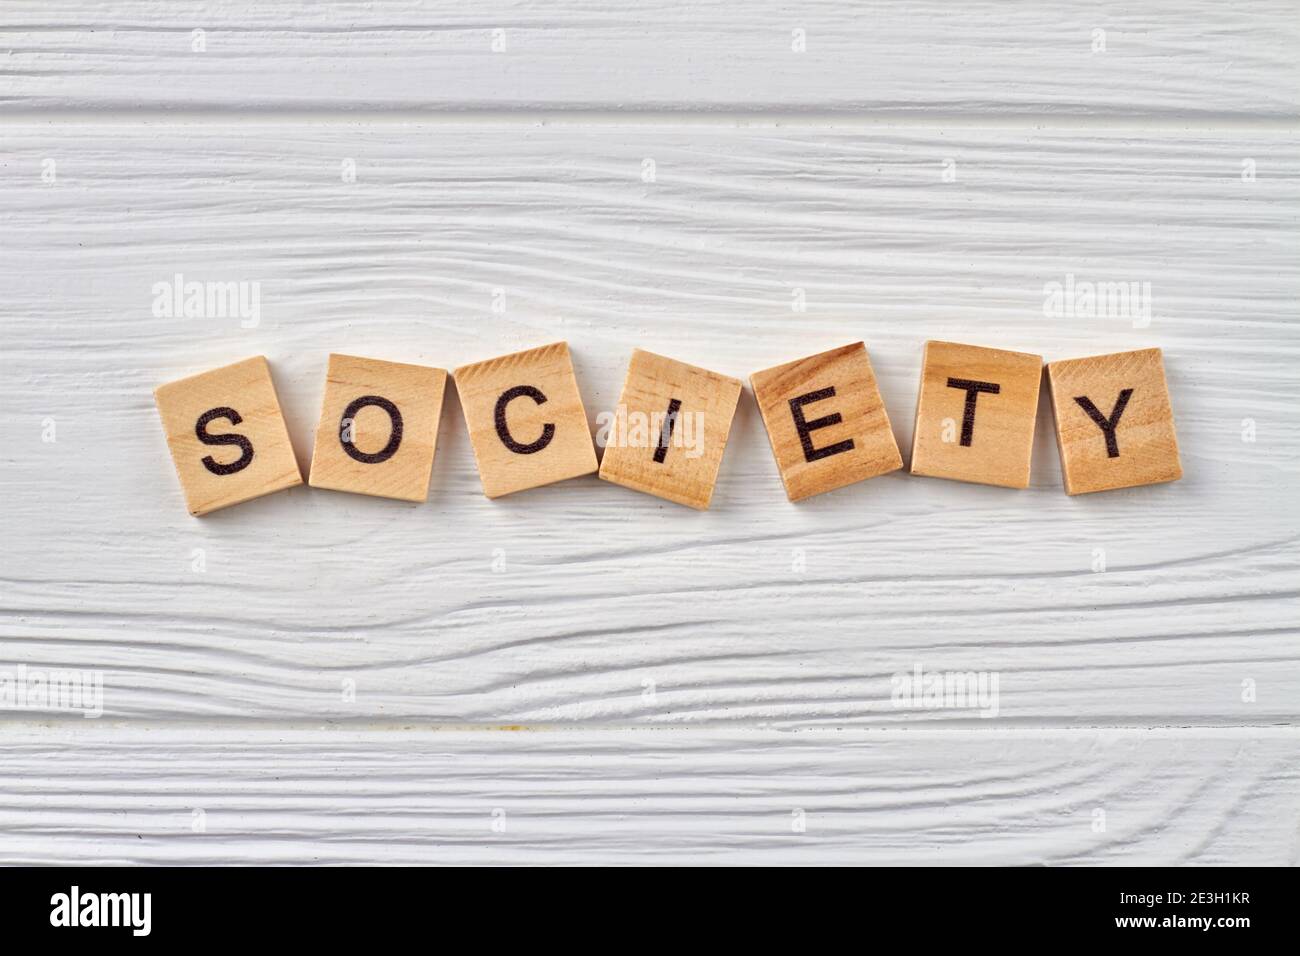 Human society word. Stock Photo